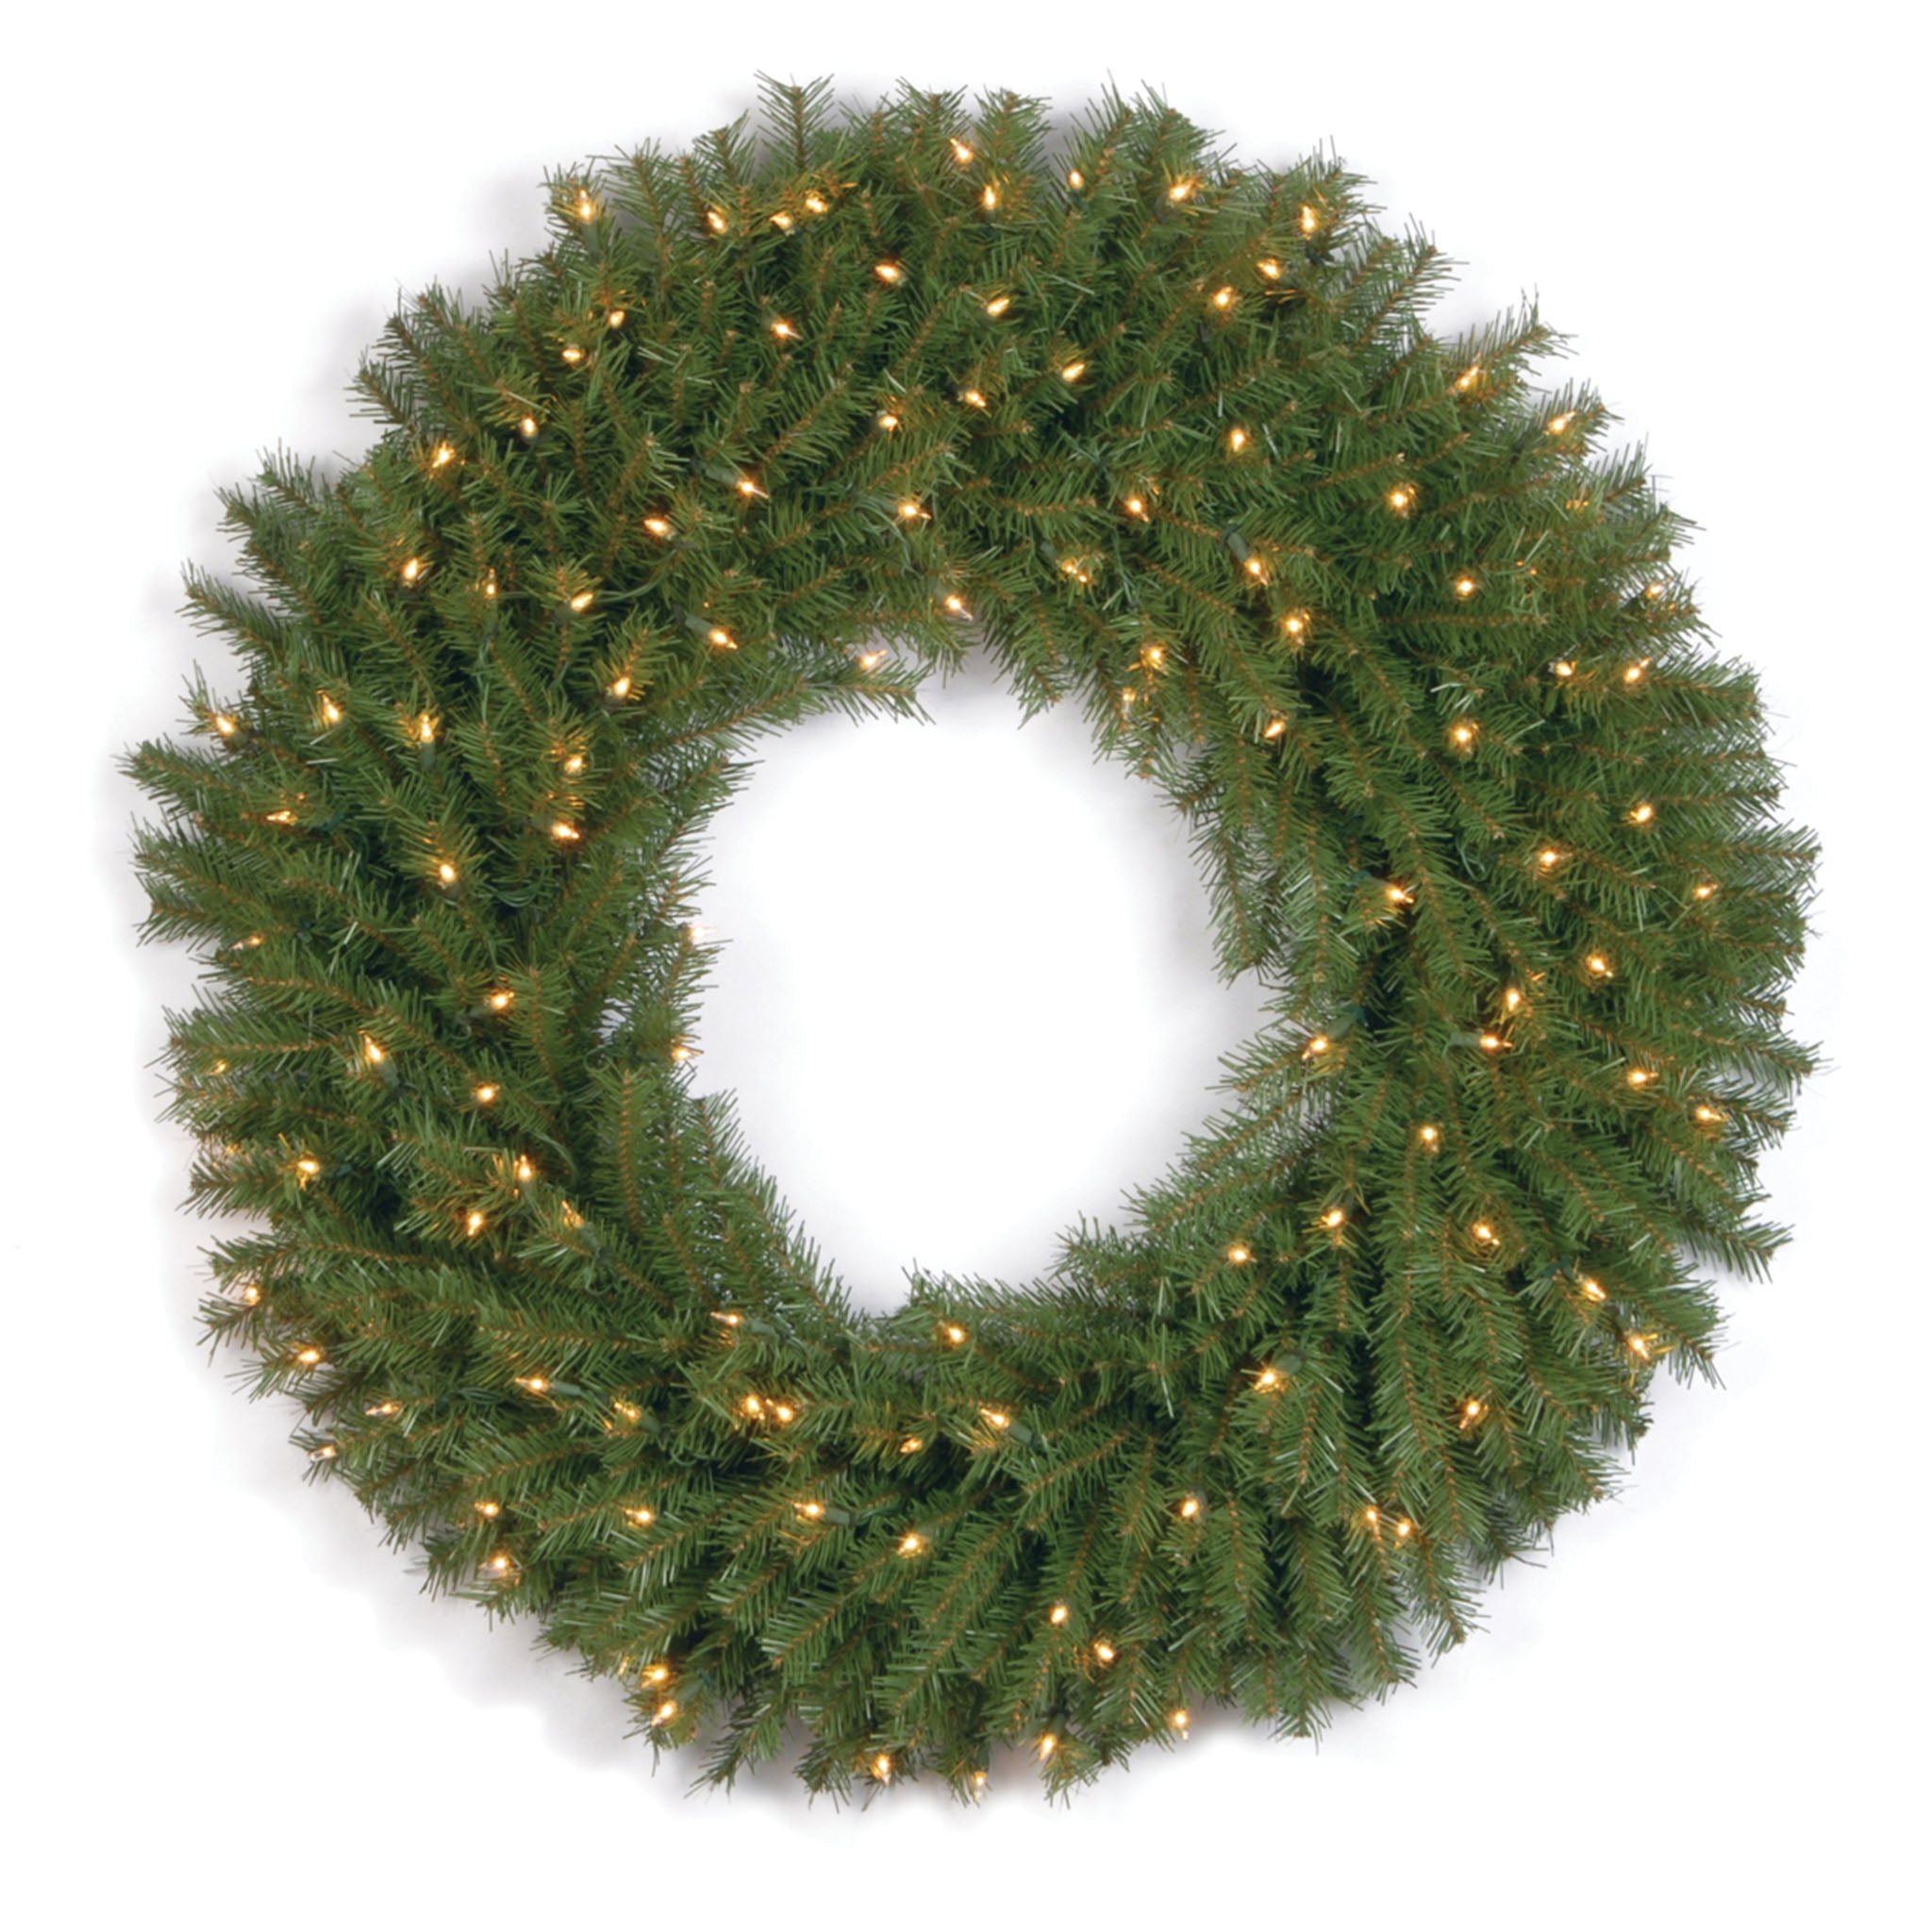 Christmas Wreaths/Garlands